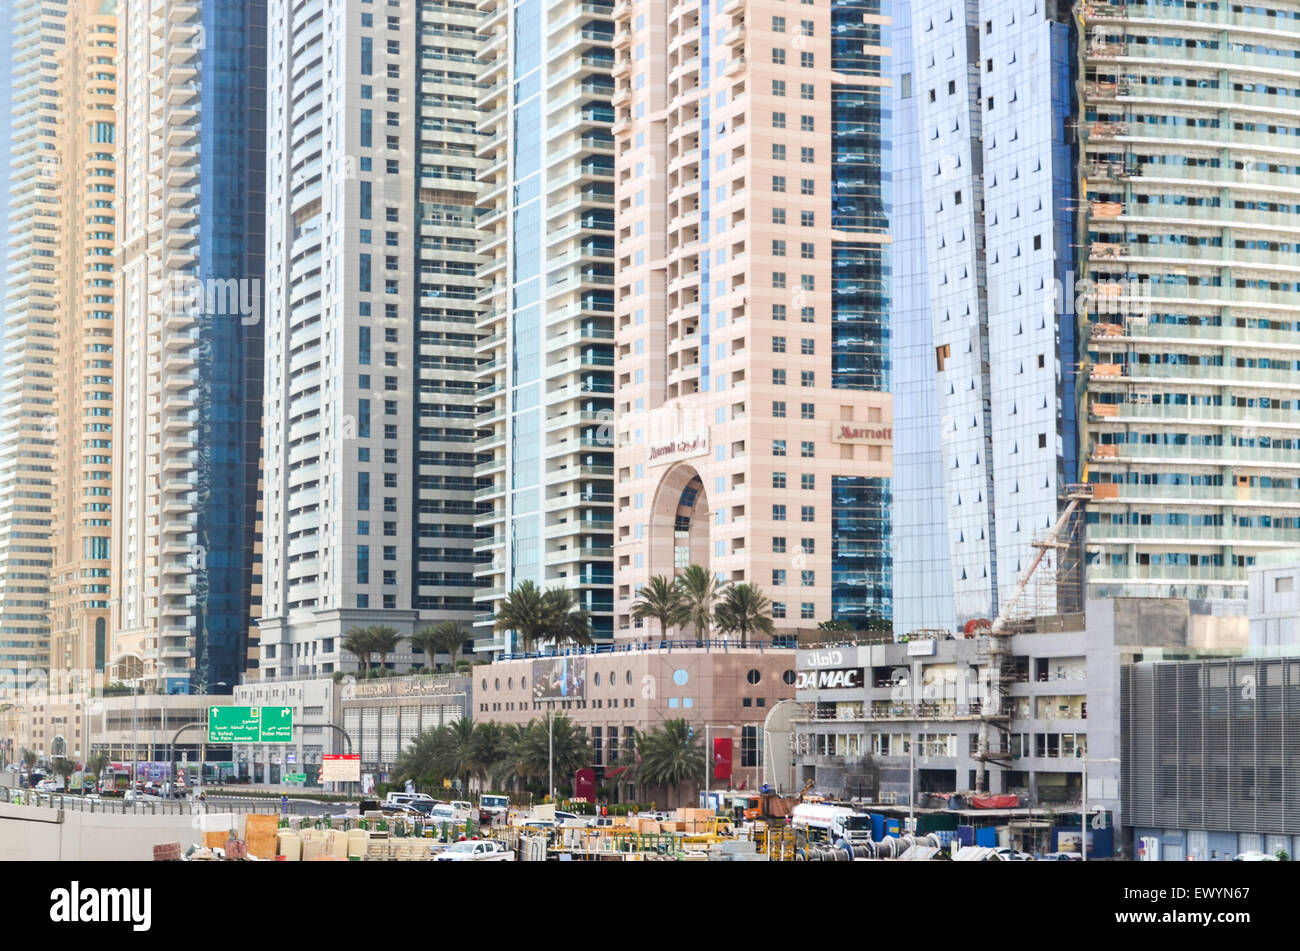 Base del bloque más alto en el mundo - Puerto deportivo de Dubai, Emiratos Árabes Unidos, con varios rascacielos un promedio de 400 m de altura Foto de stock